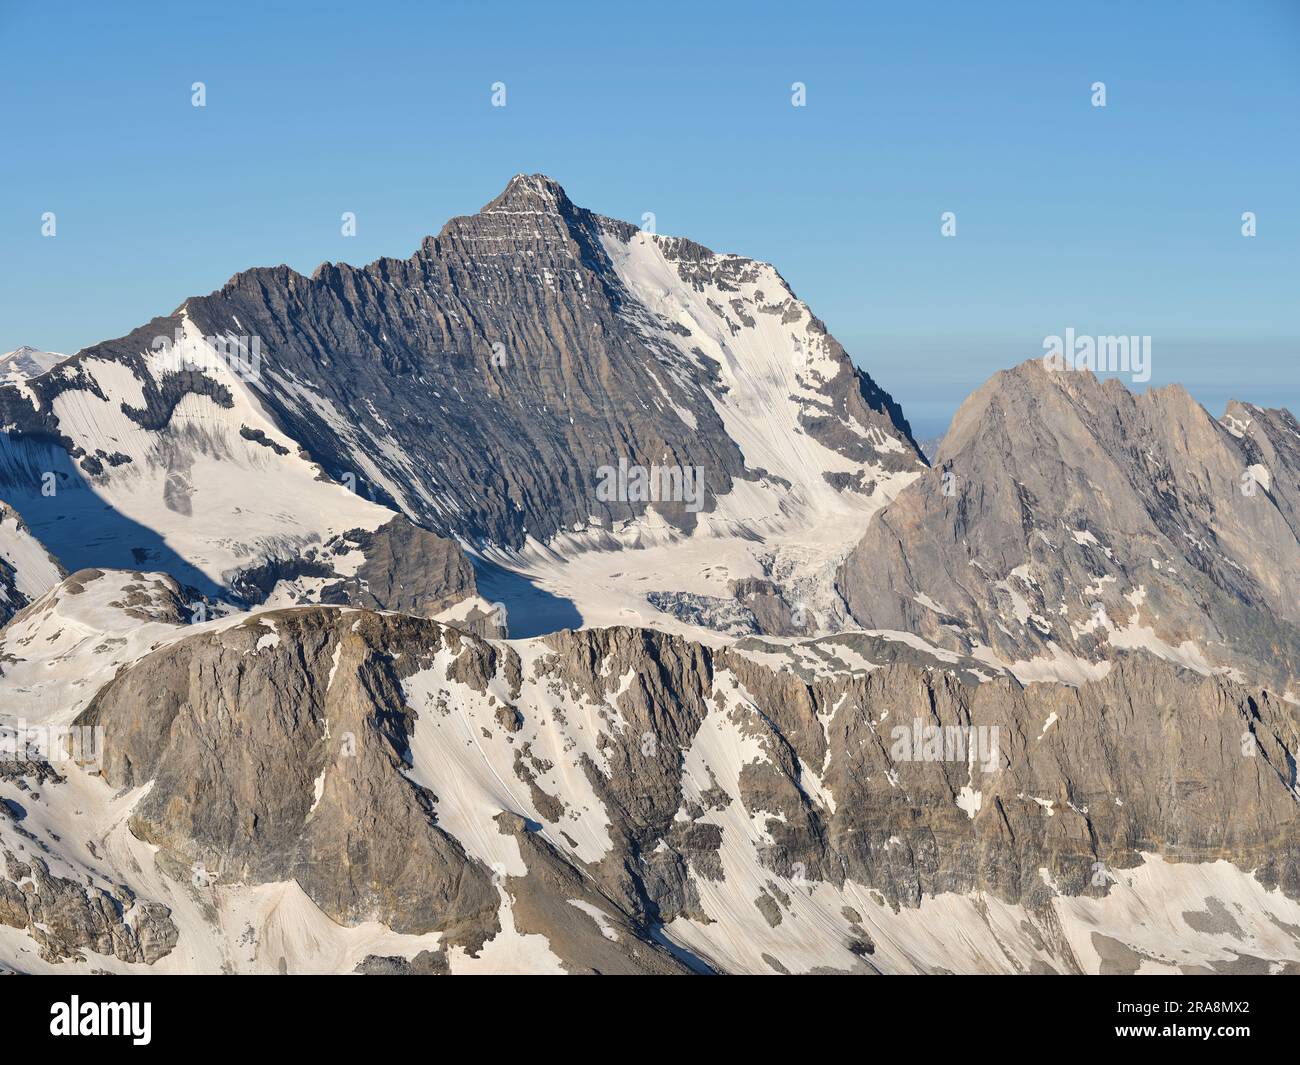 VISTA AEREA. Rivolto a nord del Monte grande casse (altitudine: 3855 m), questa è la vetta più alta del massiccio delle Vanoise. Auvergne-Rhône-Alpes, Francia. Foto Stock